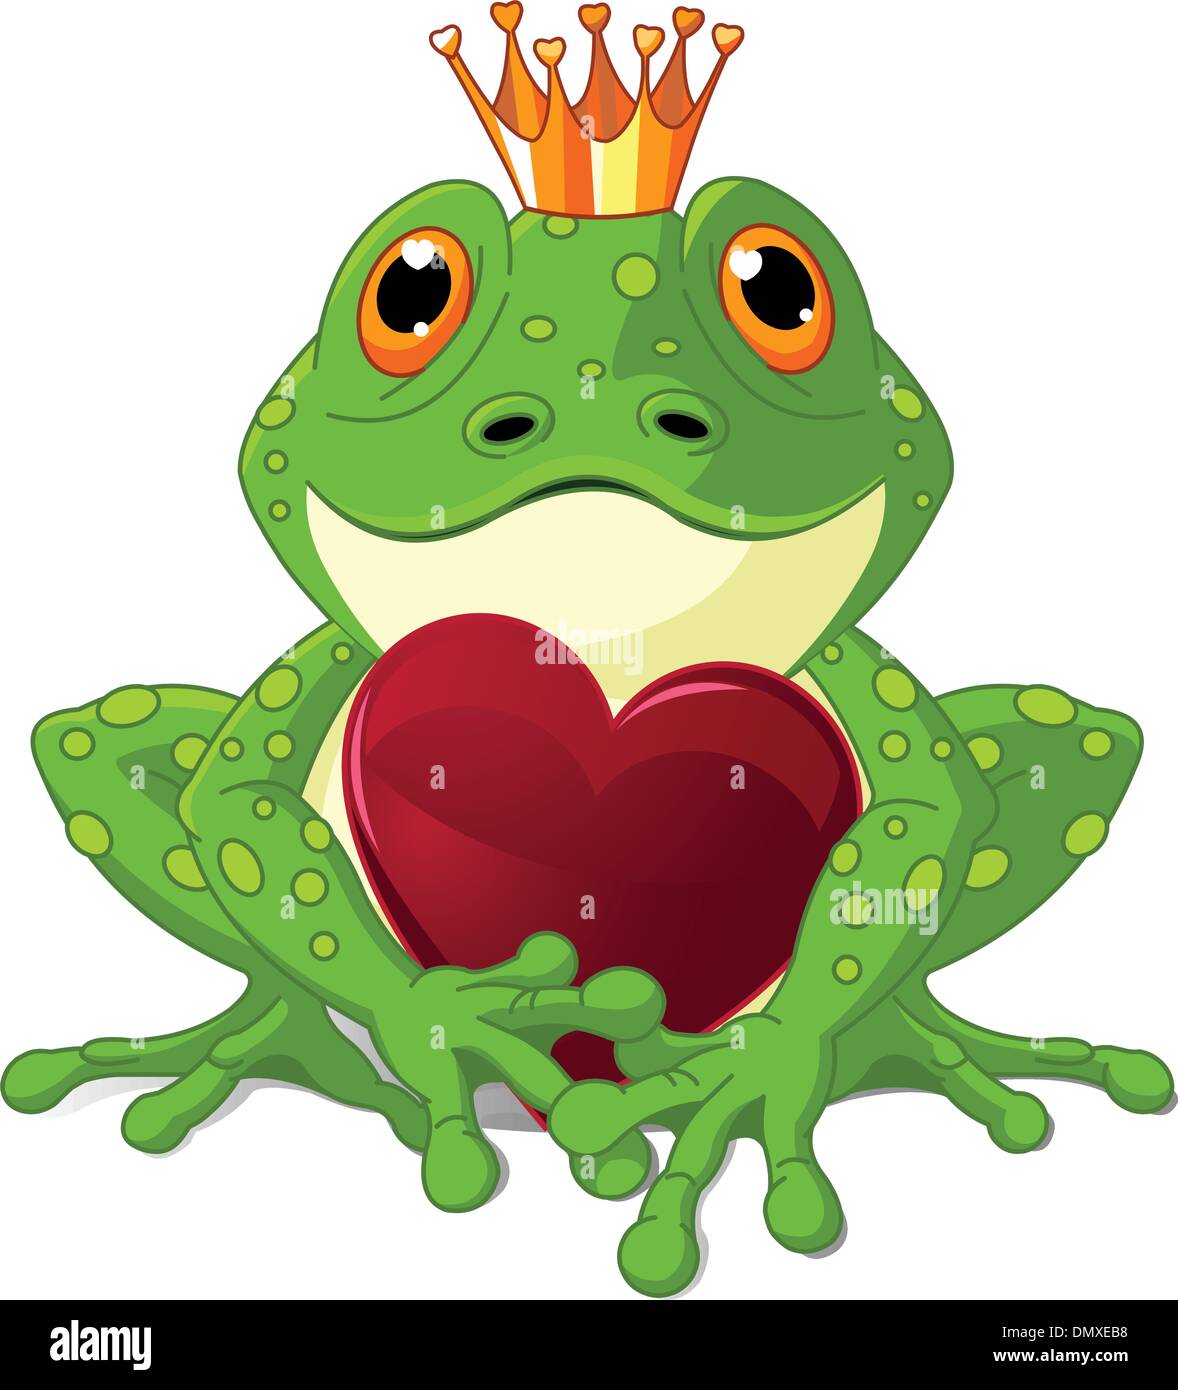 Frosch mit Herz Stock-Vektorgrafik - Alamy